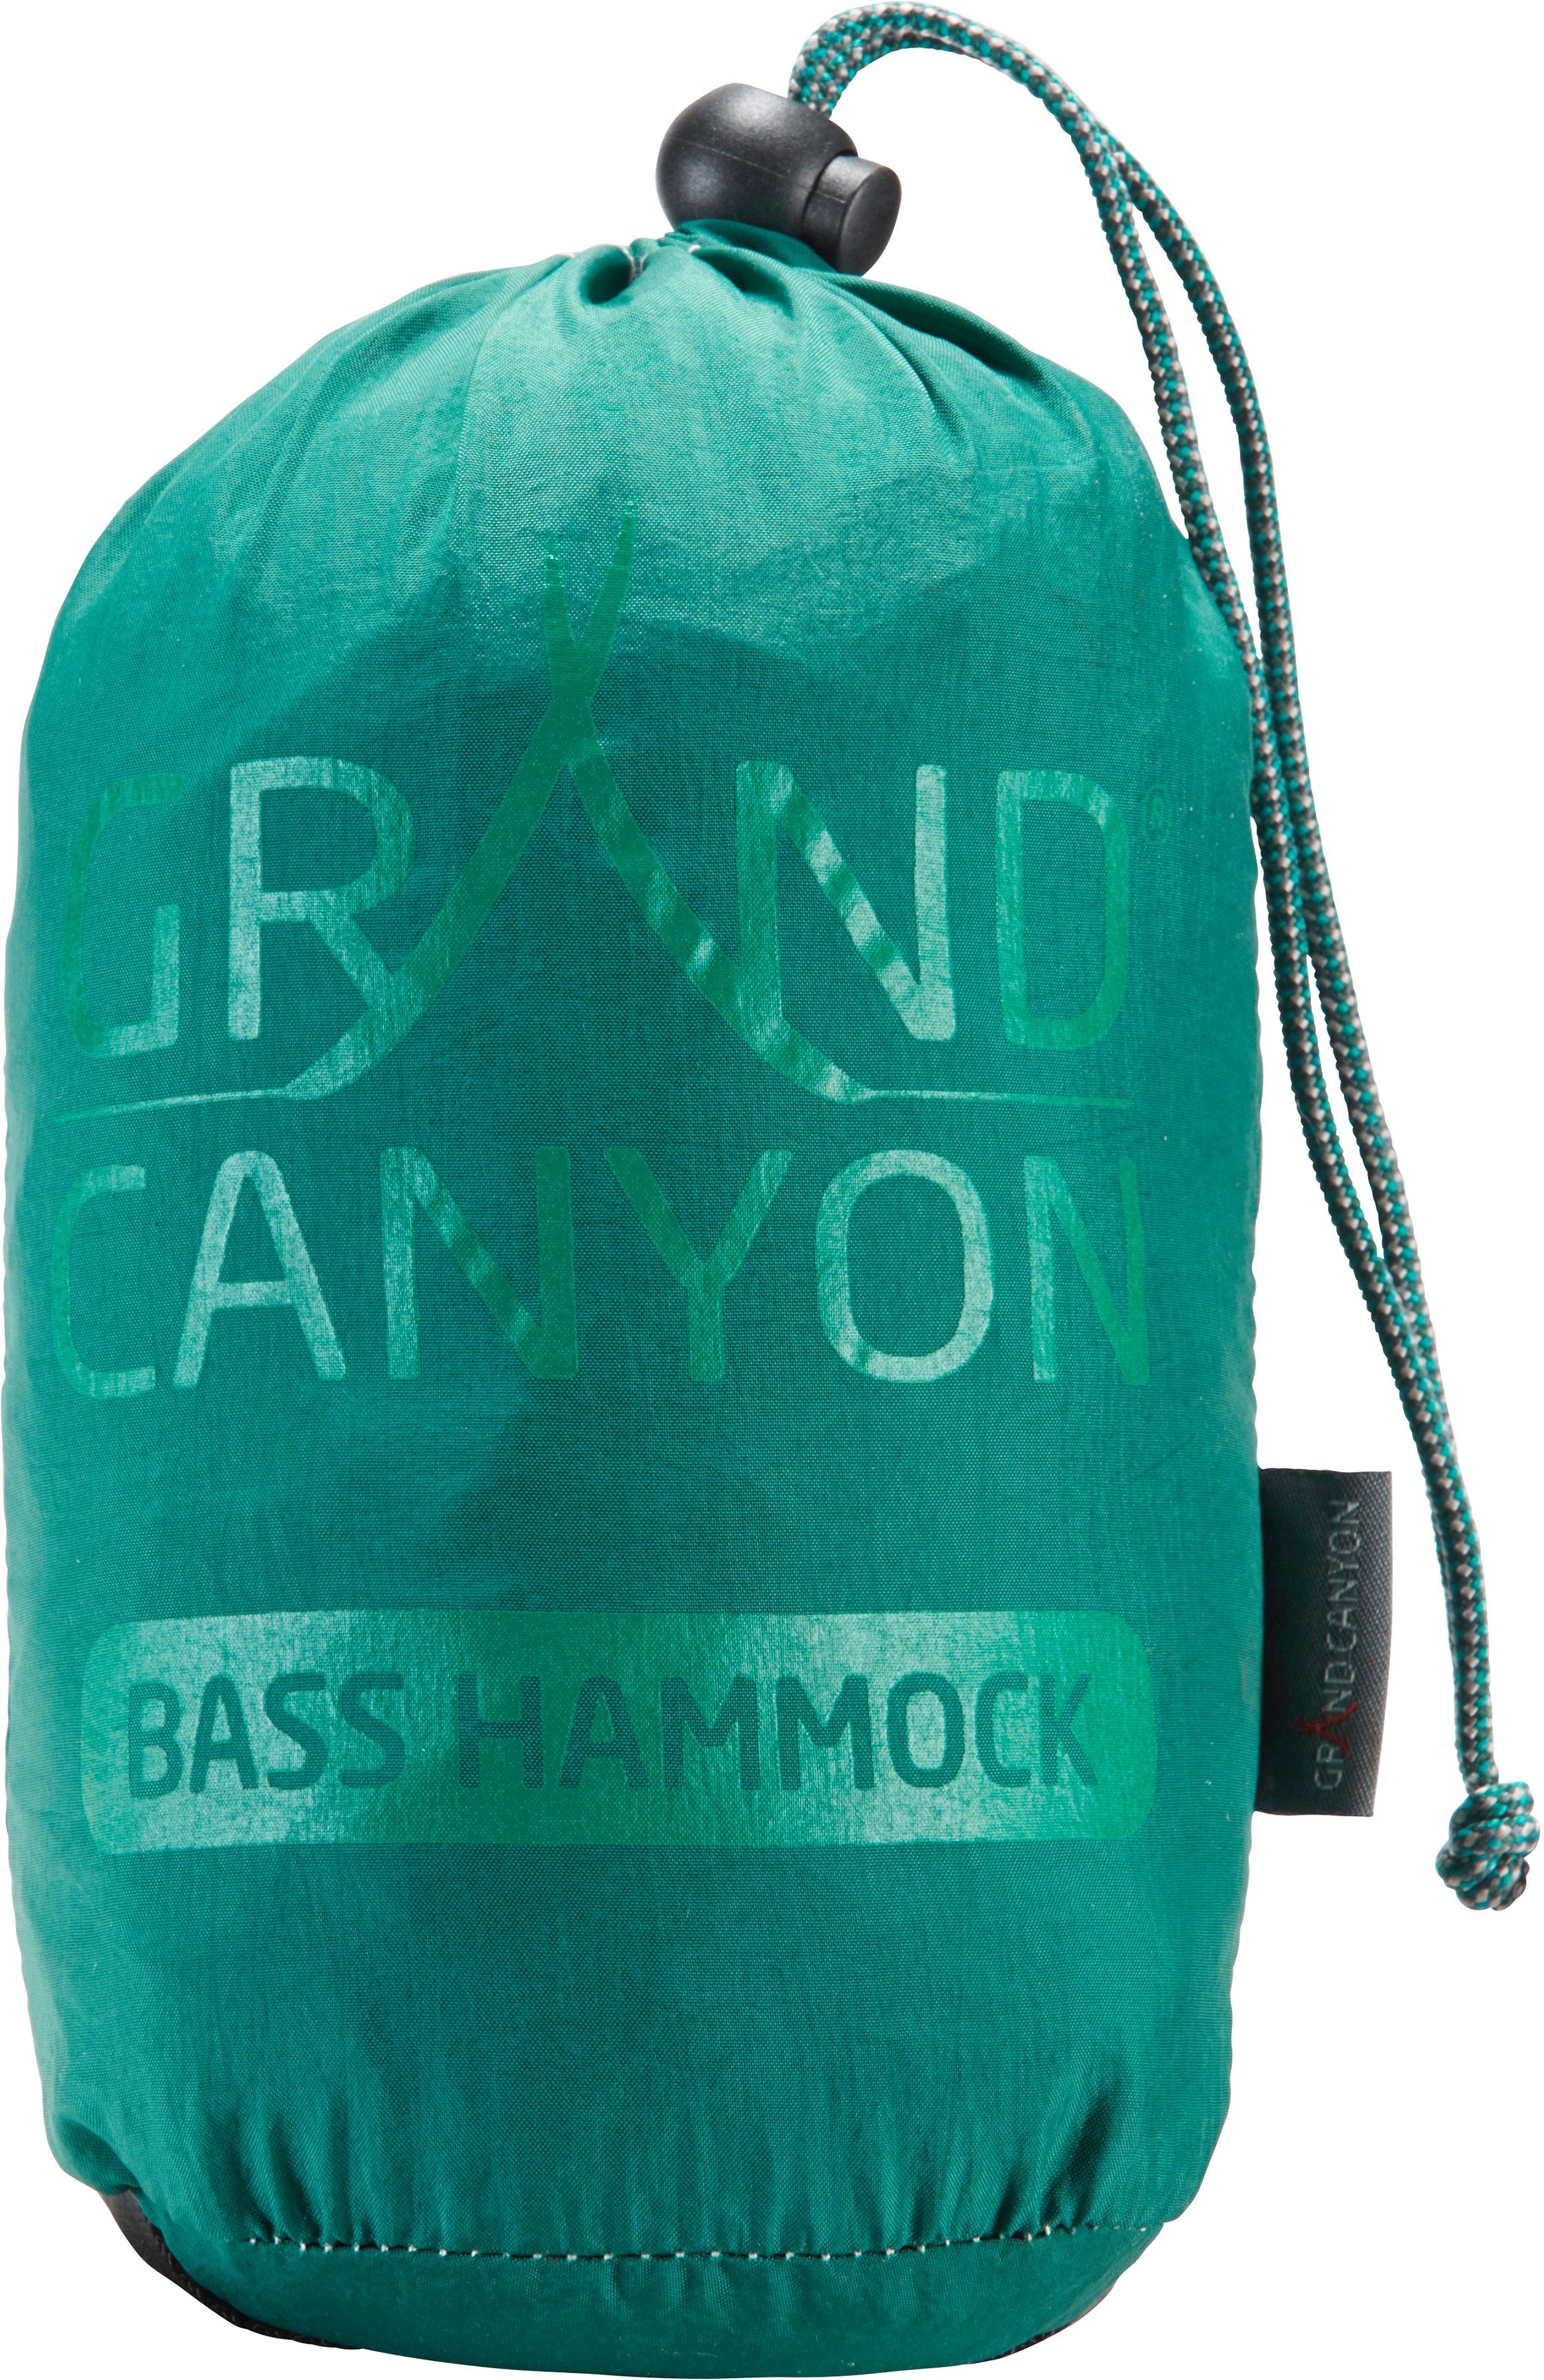 Hängematte Bass grün GRAND CANYON Hammock